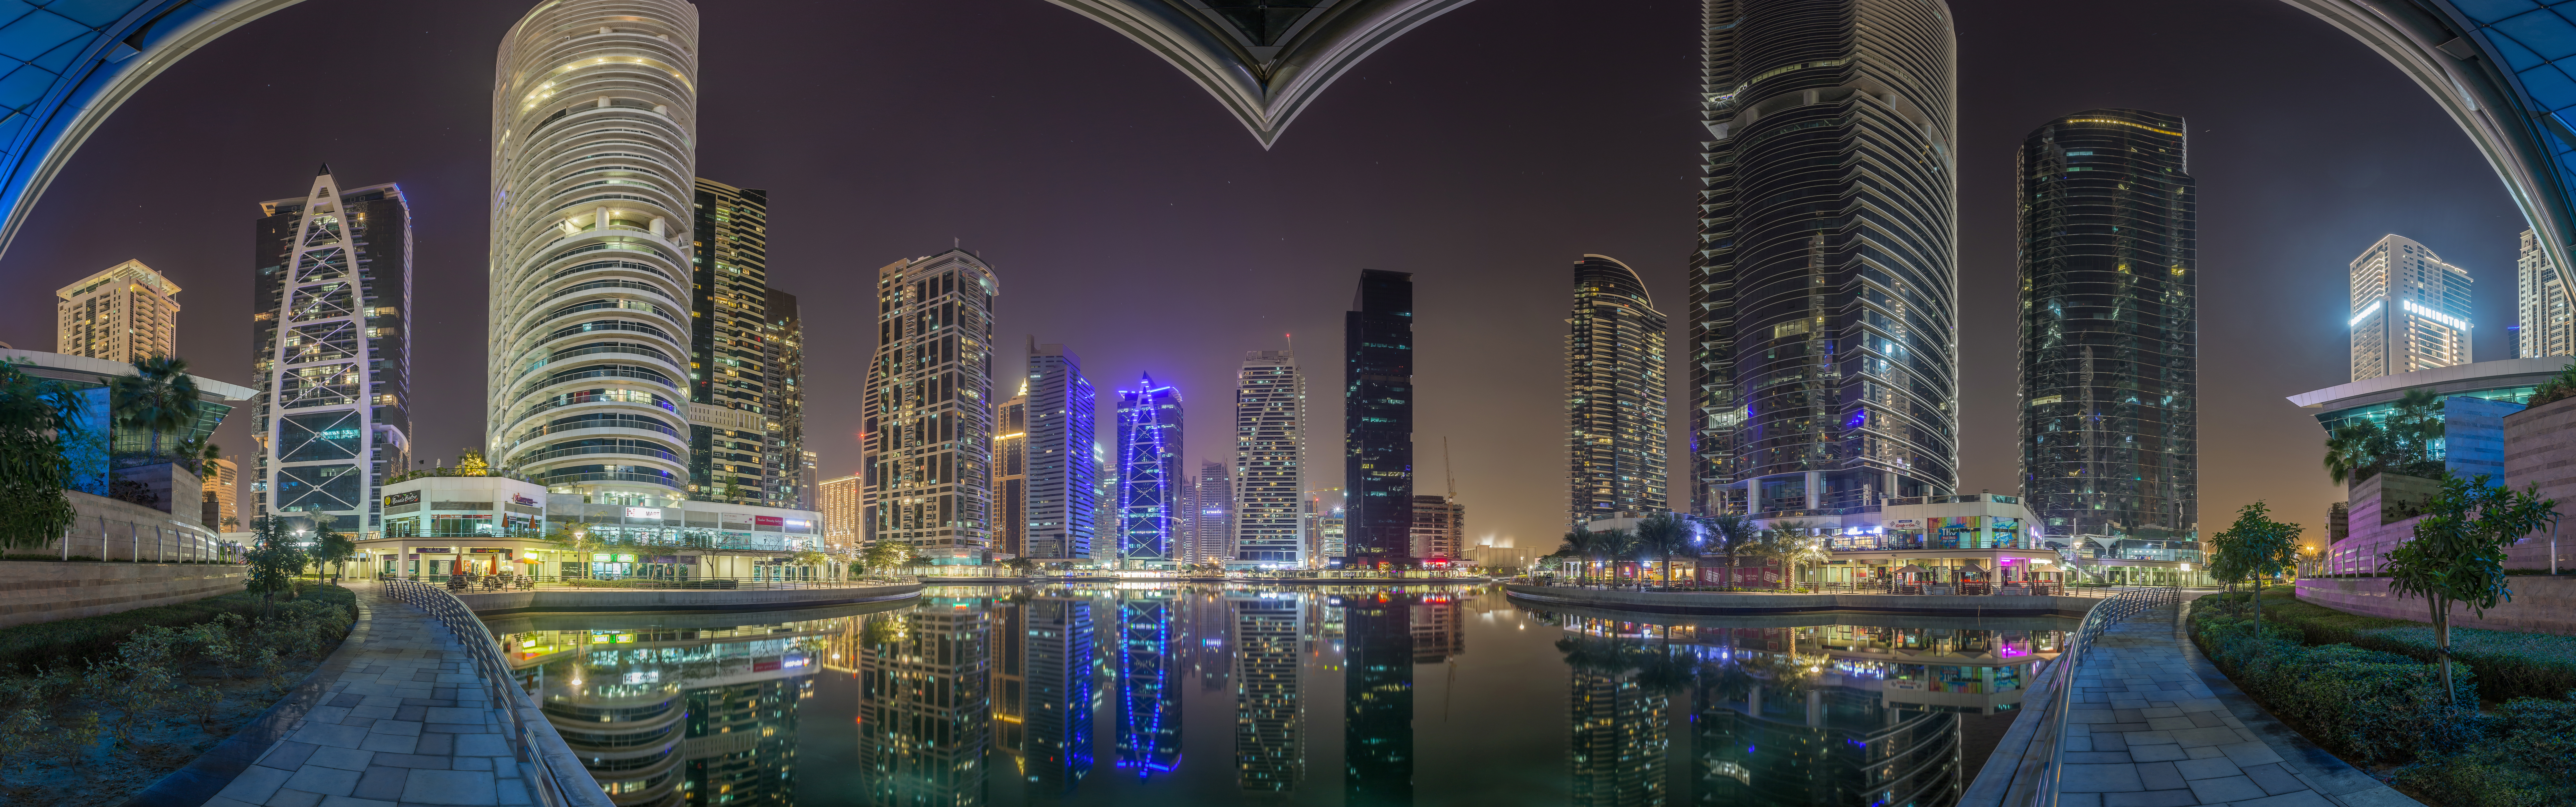 Обои Al Mars Tower Jumeirah Lake Dubai Dubai Downtown на рабочий стол